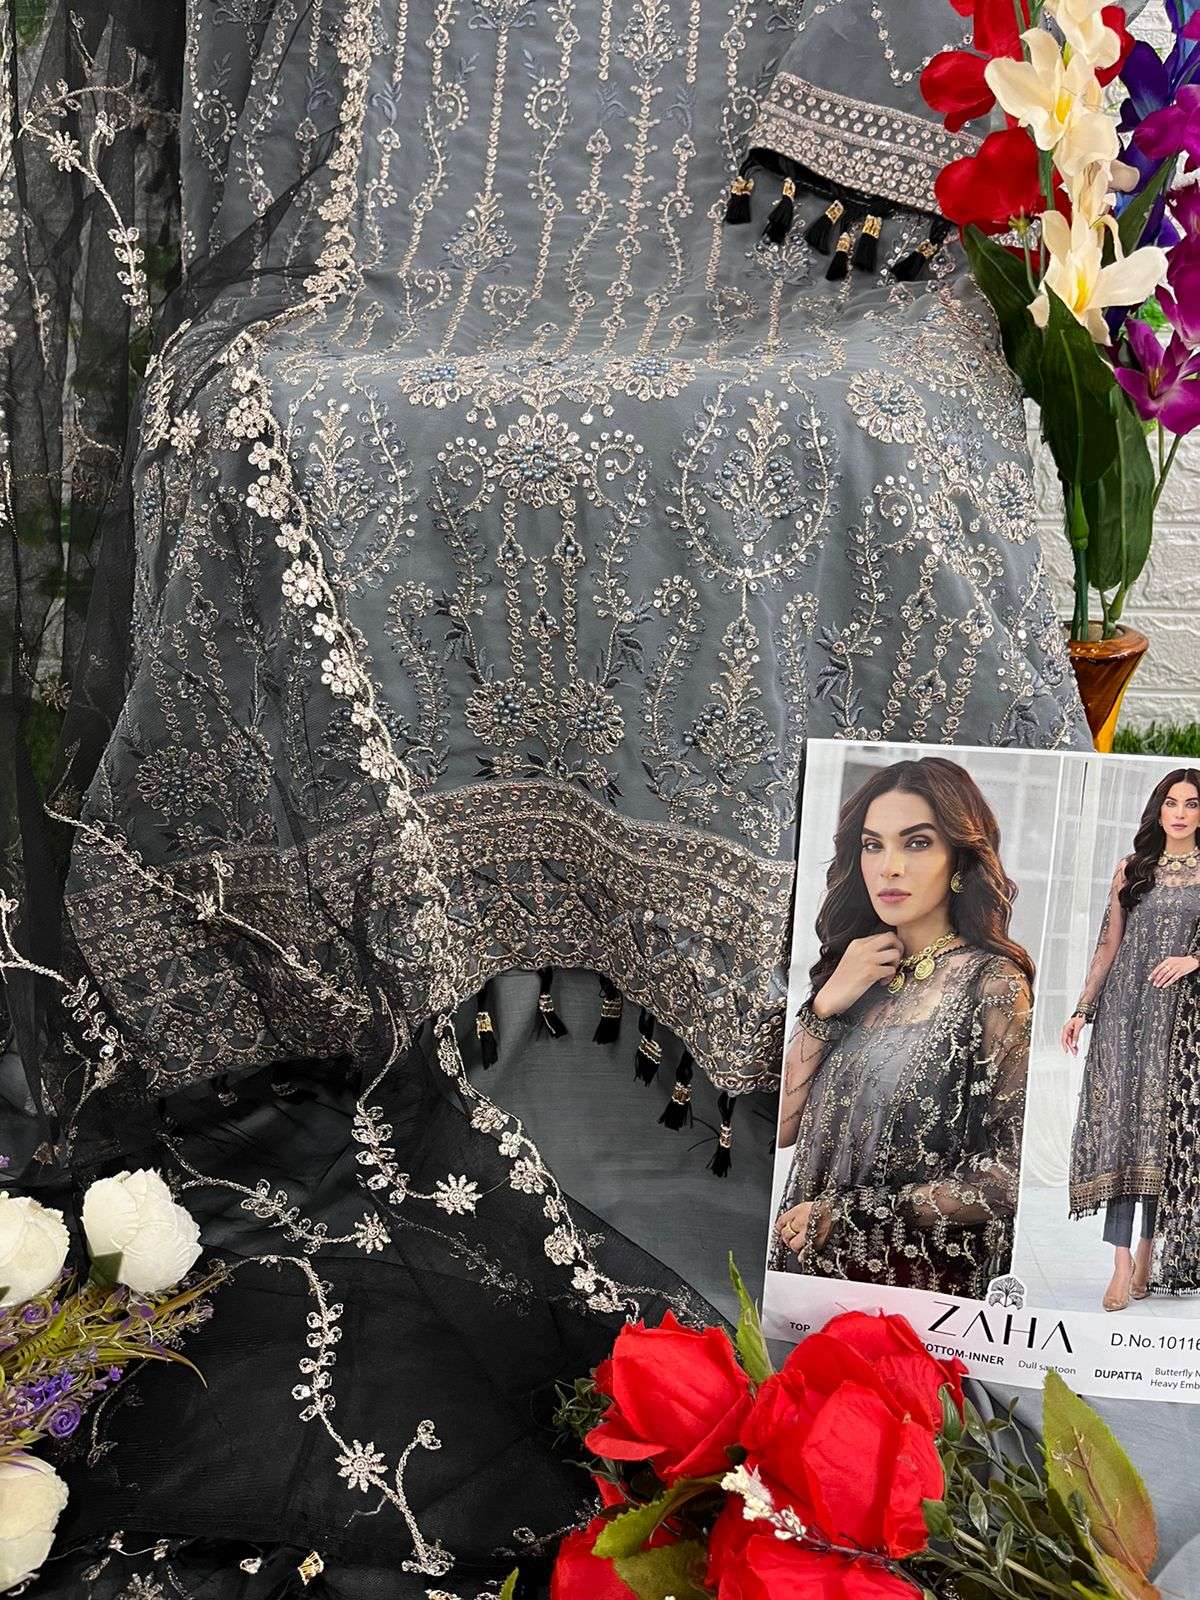 zaha aaeesha vol-2 10116-10119 series exclusive designer pakistani salwar suits wholesaler in surat 